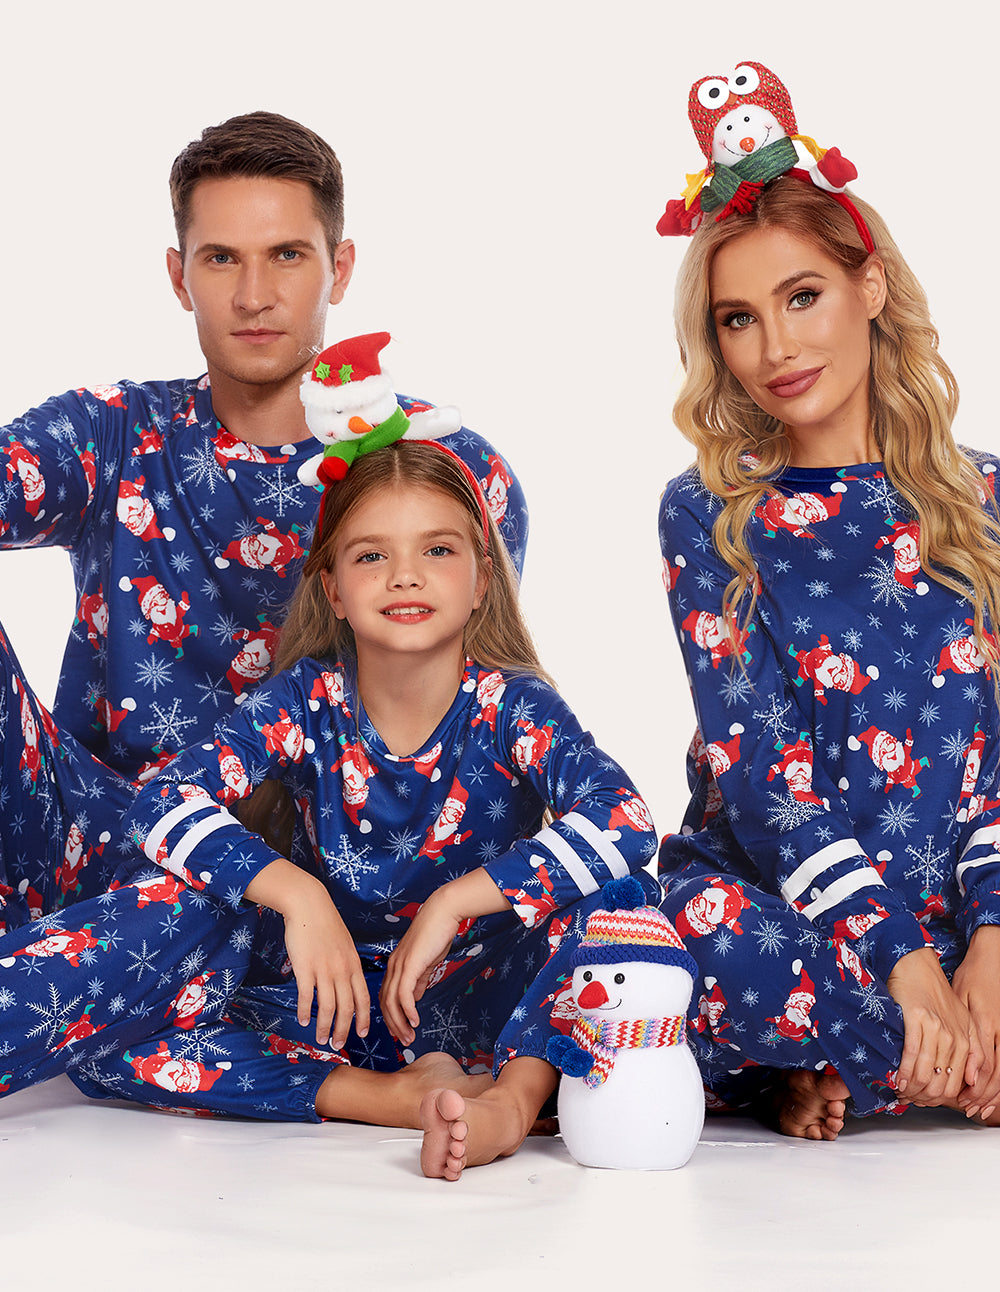 Ekouaer Striped Long Sleeve Parent-Child Pajamas Set